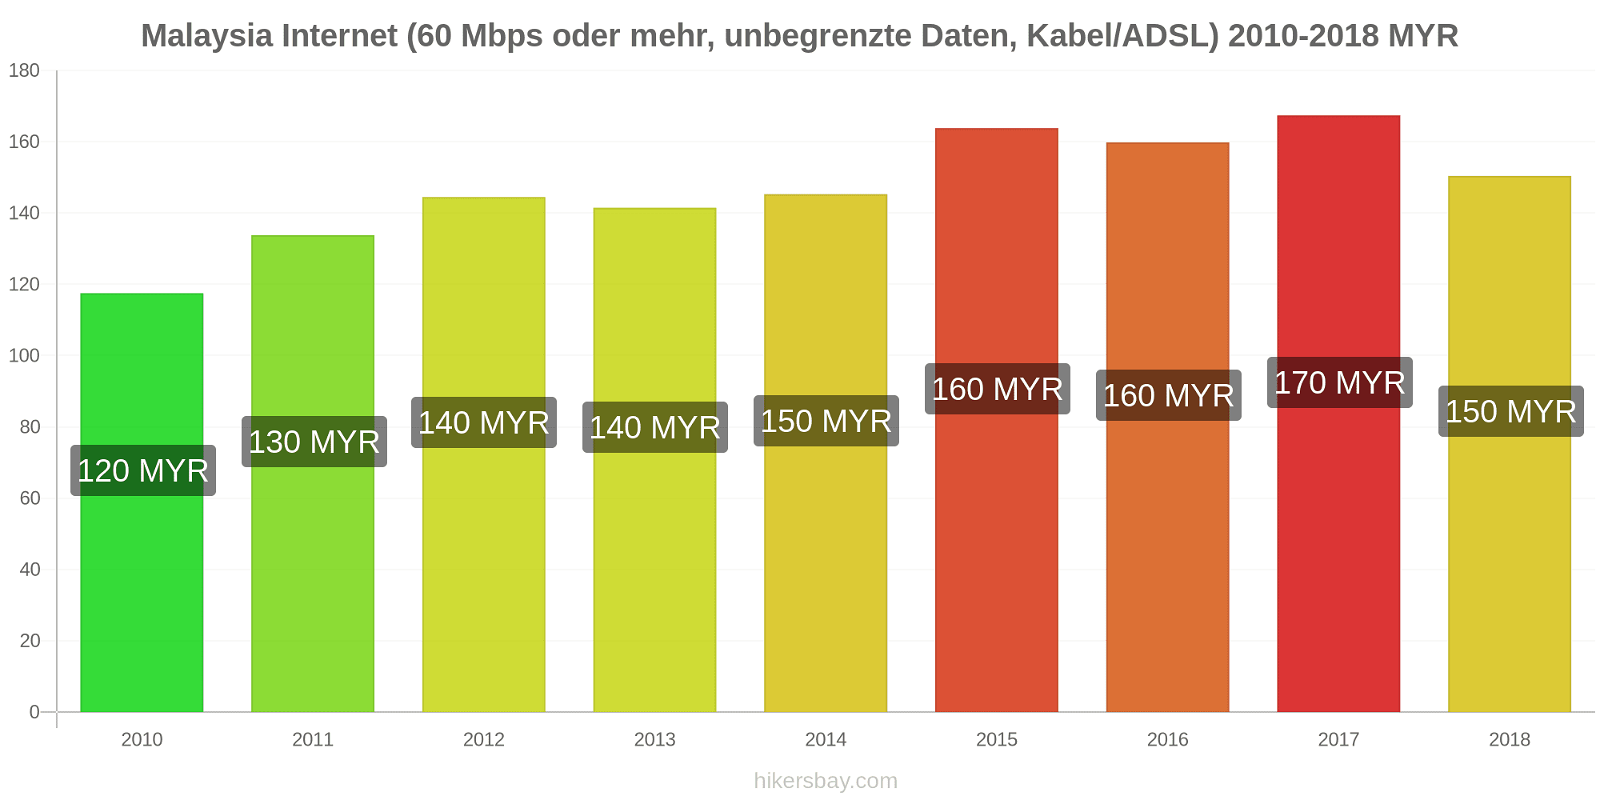 Malaysia Preisänderungen Internet (60 Mbps oder mehr, unbegrenzte Daten, Kabel/ADSL) hikersbay.com